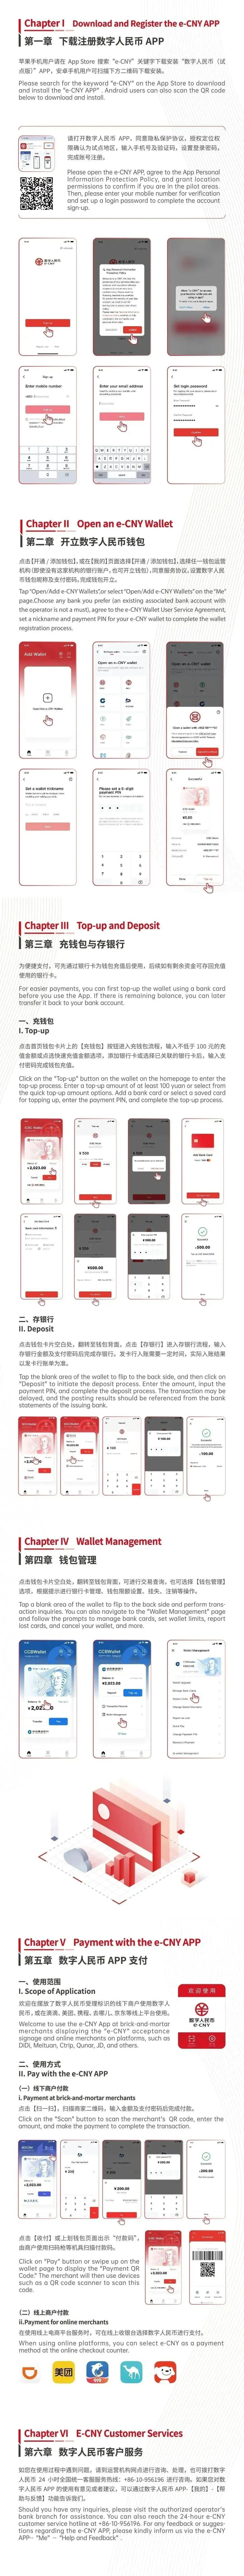 有效身份证件至上海市内银行网点开立人民币银行账户,办理境内银行卡